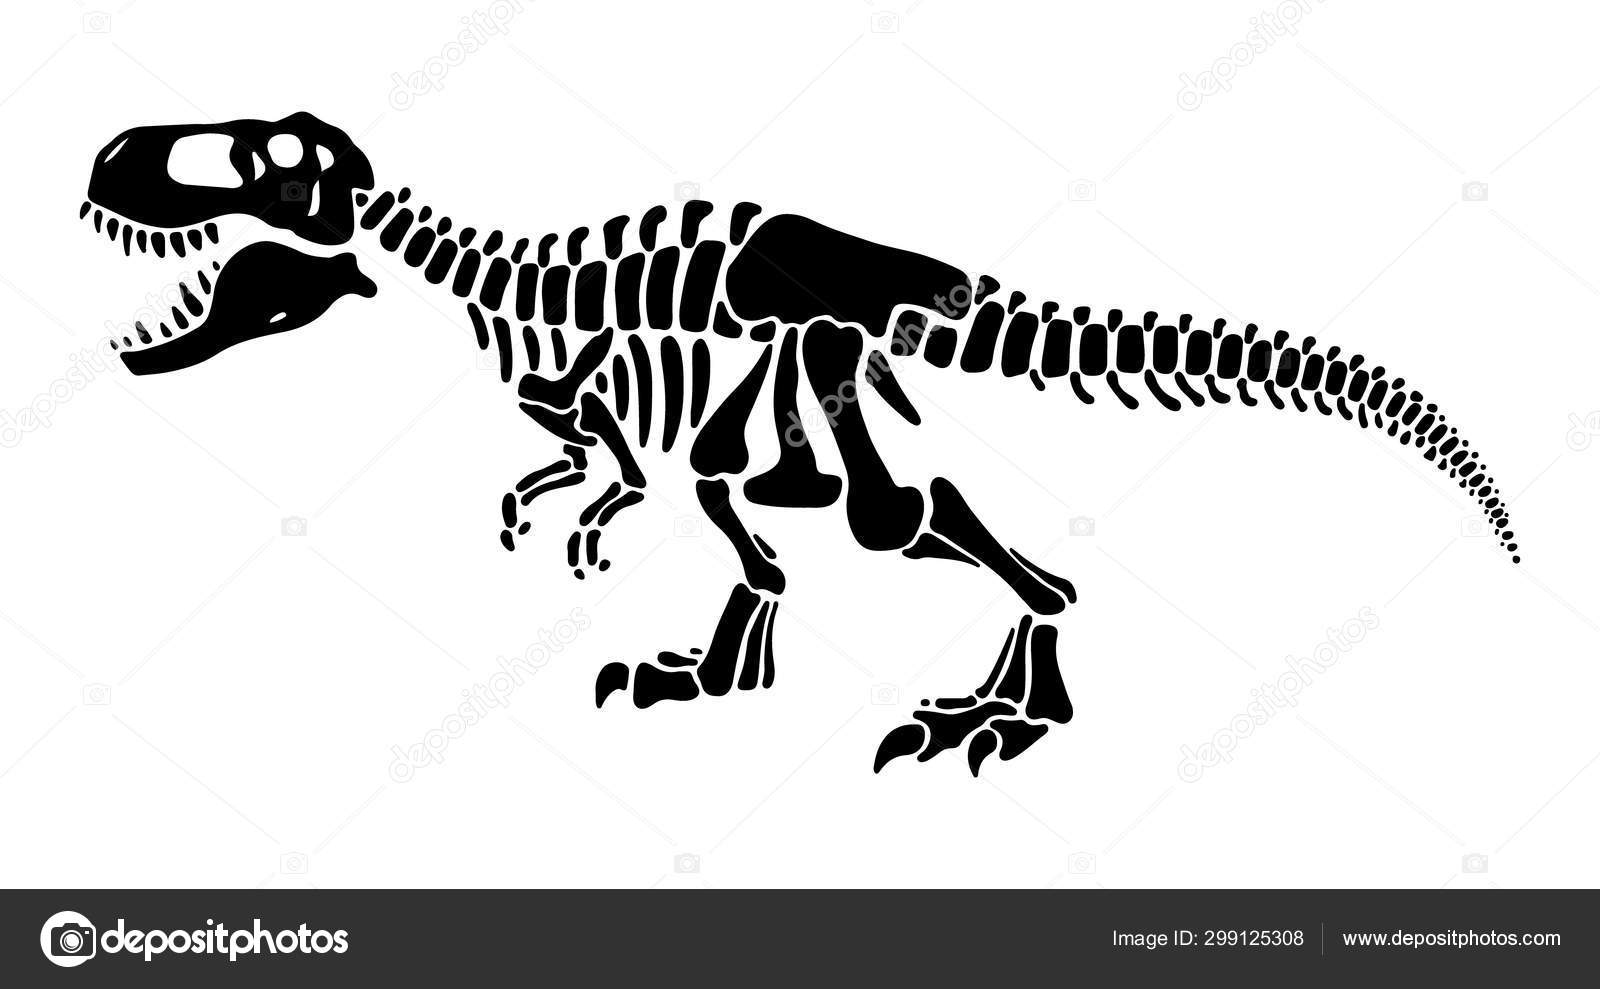 T rex dinossauros ossos silhueta espacial negativa ilustrações conjunto  imagem vetorial de jkazanceva© 299125280